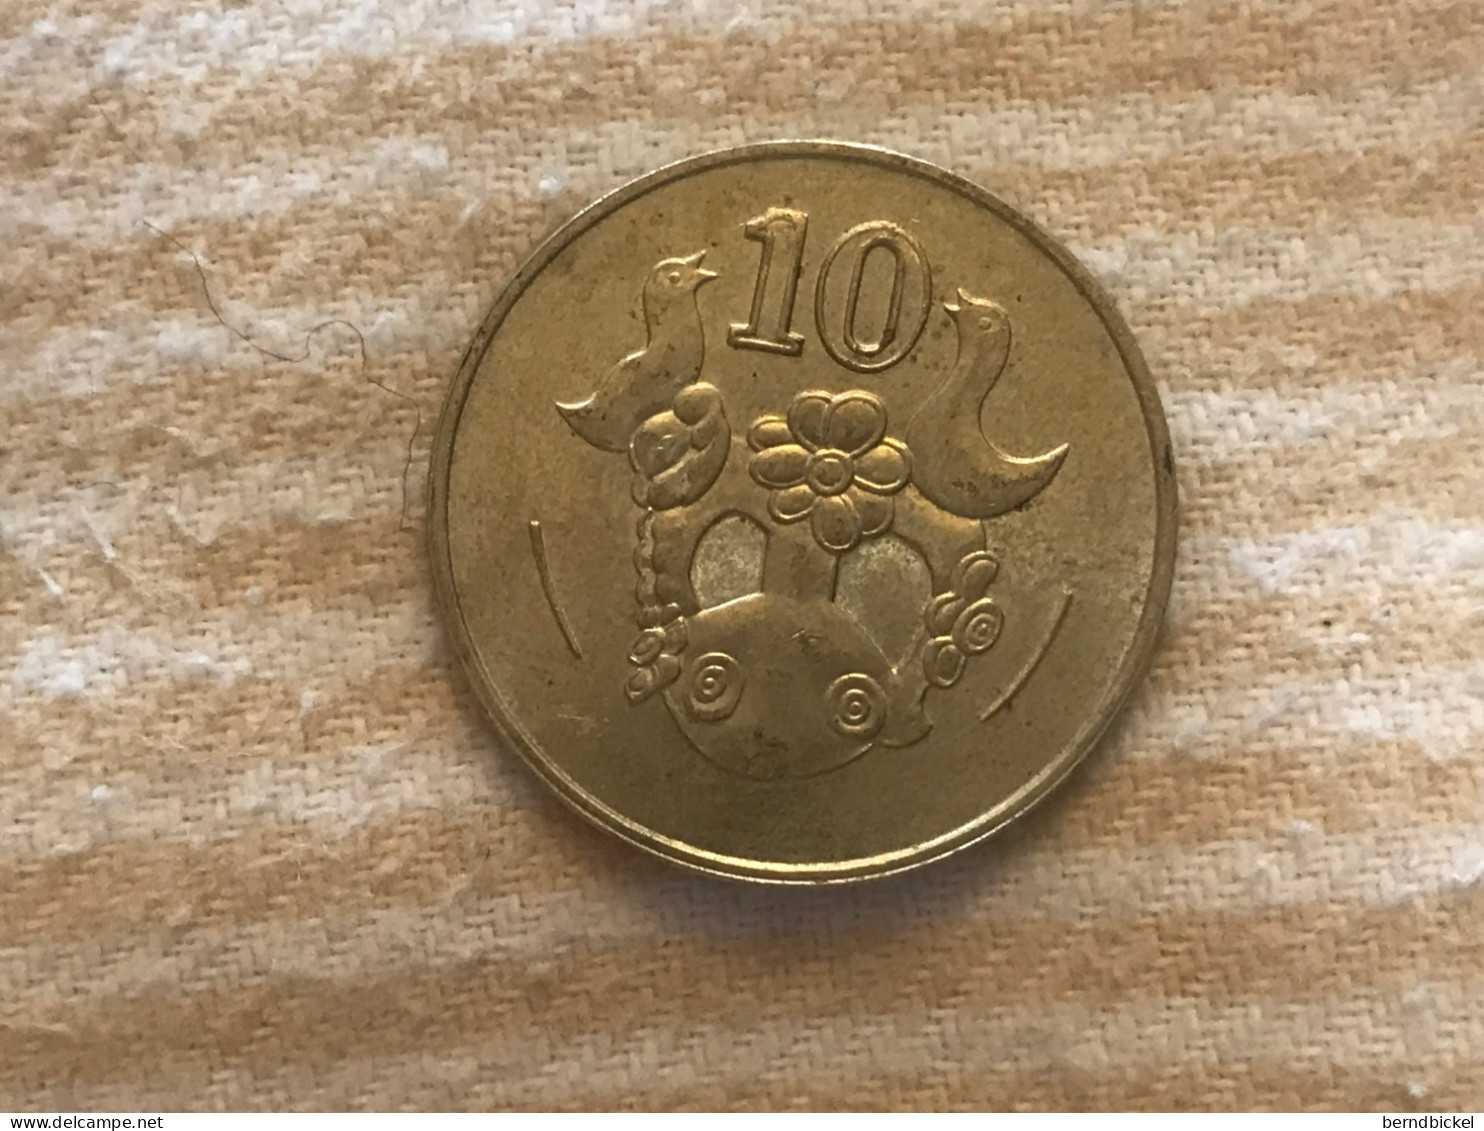 Münze Münzen Umlaufmünze Zypern 10 Cent 2004 - Cyprus